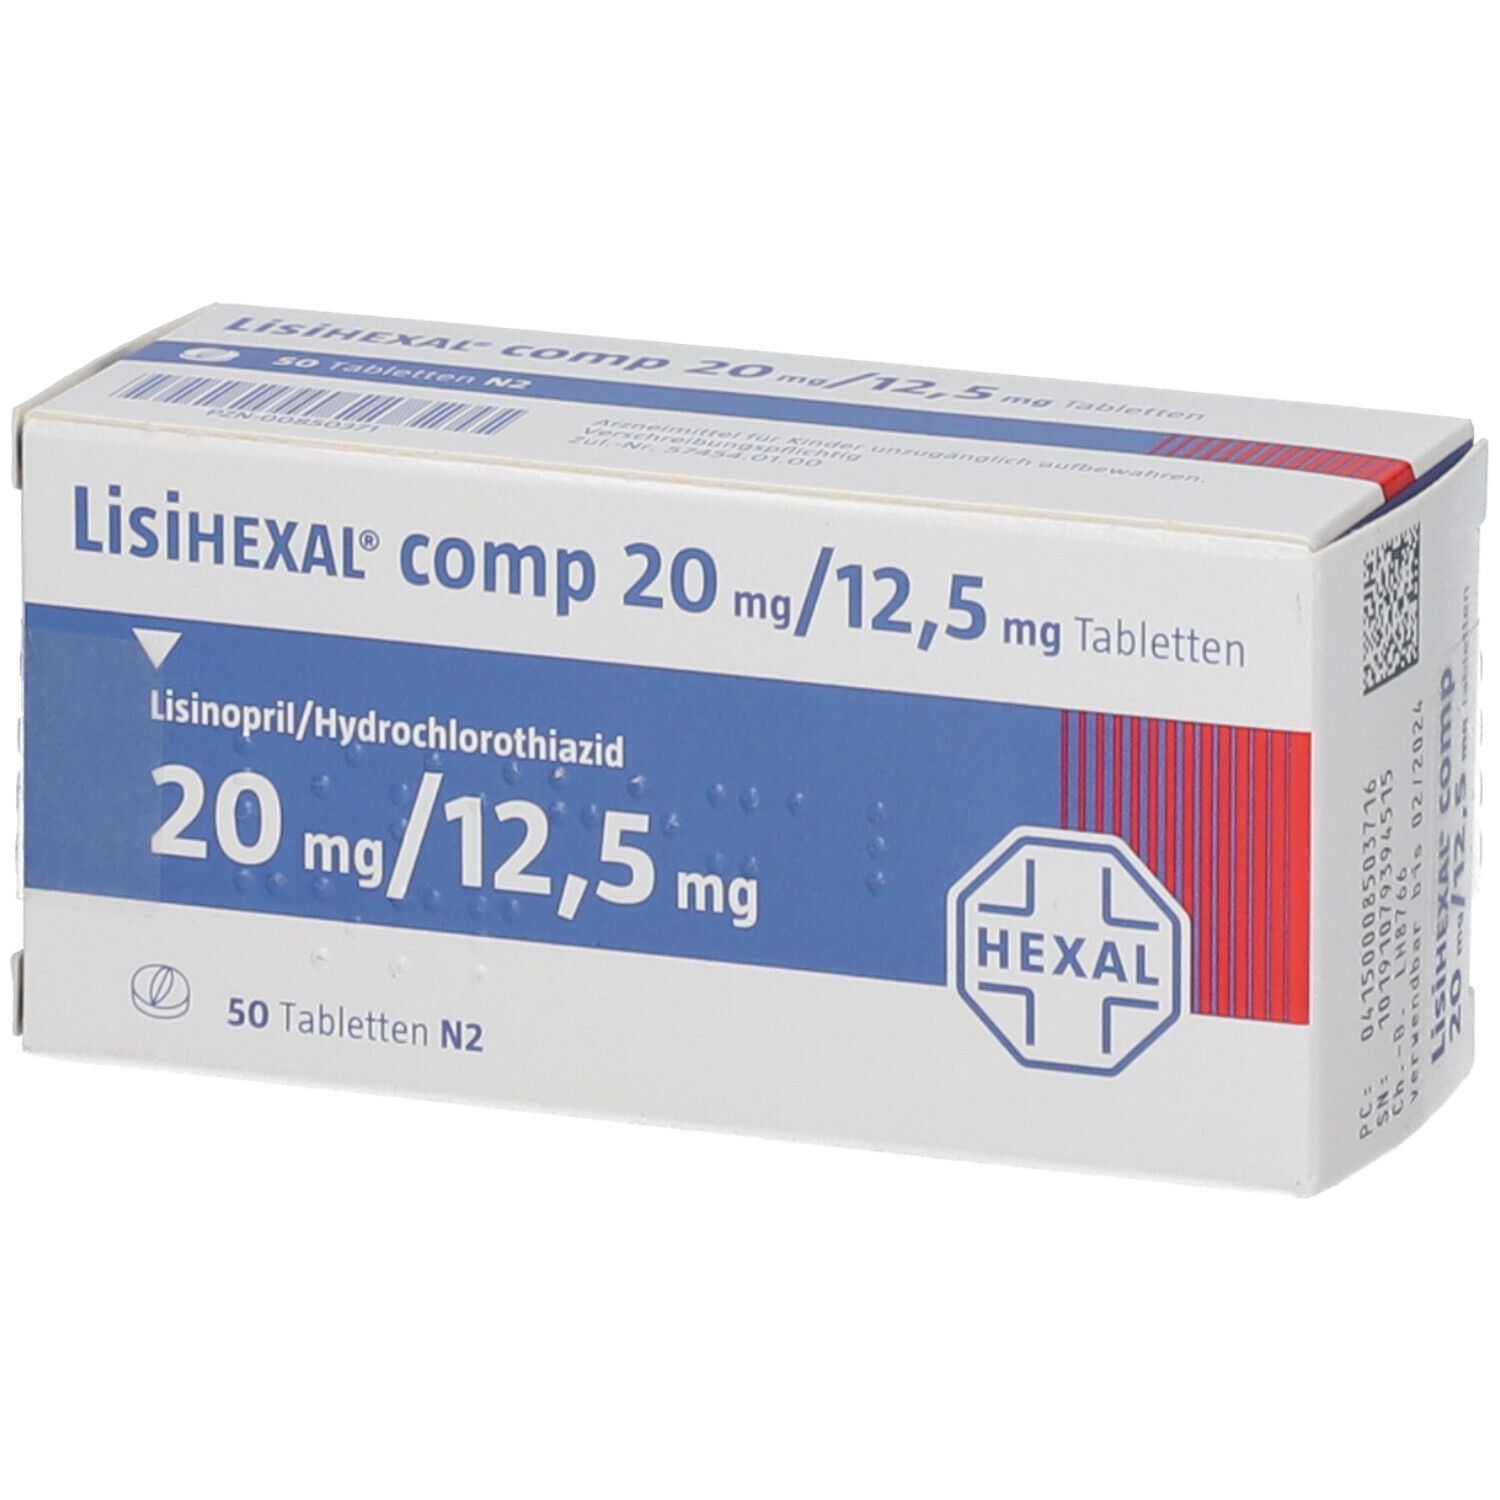 LisiHEXAL® comp 20 mg/12,5 mg